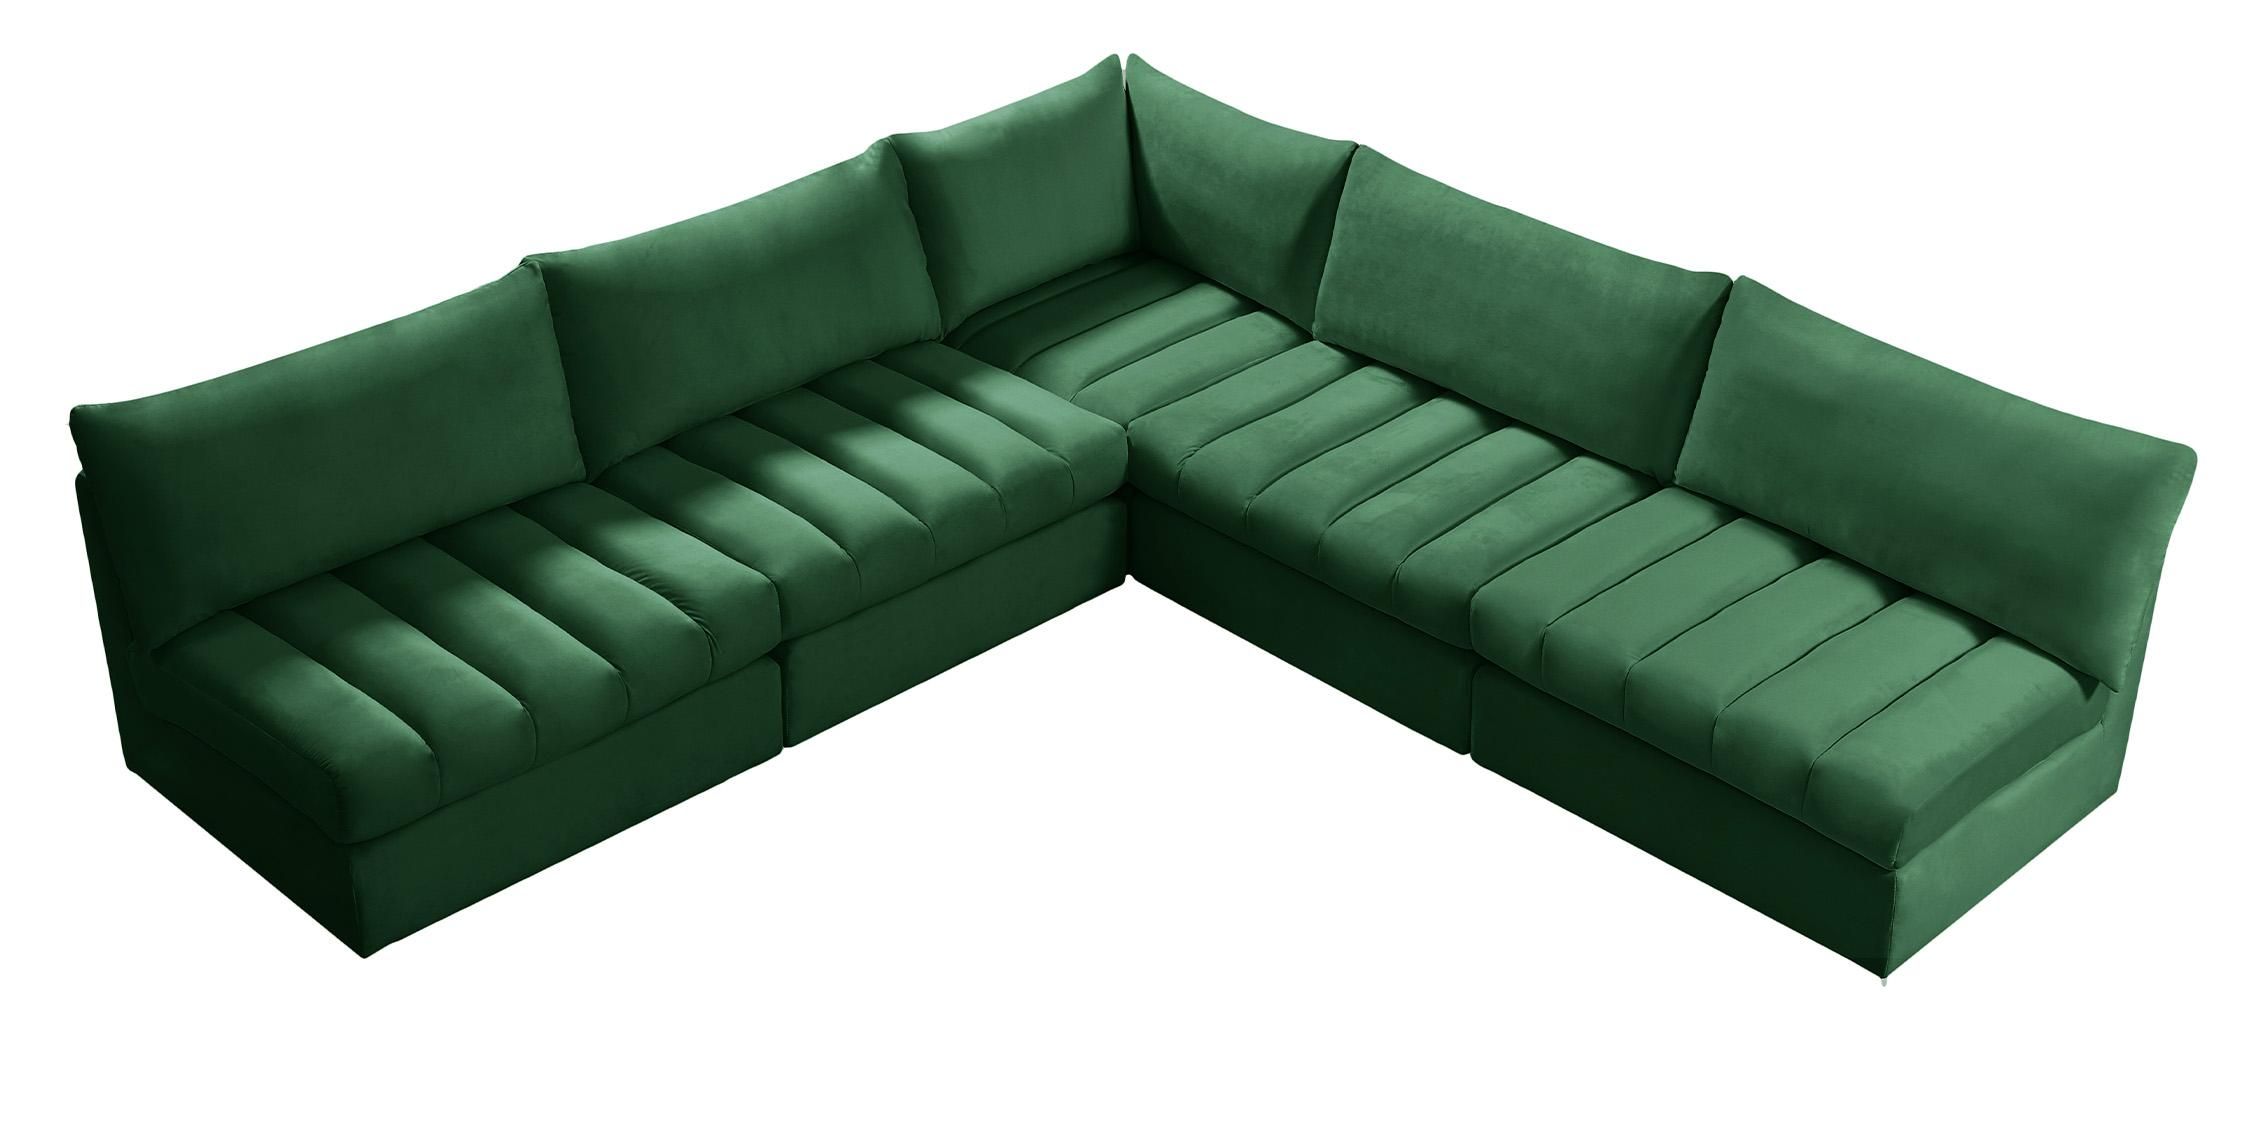 Green Velvet Tufted Modular Sectional Jacob 649green Sec5b Meridian Modern  – Buy Online On Ny Furniture Outlet Throughout Green Velvet Modular Sectionals (View 13 of 15)